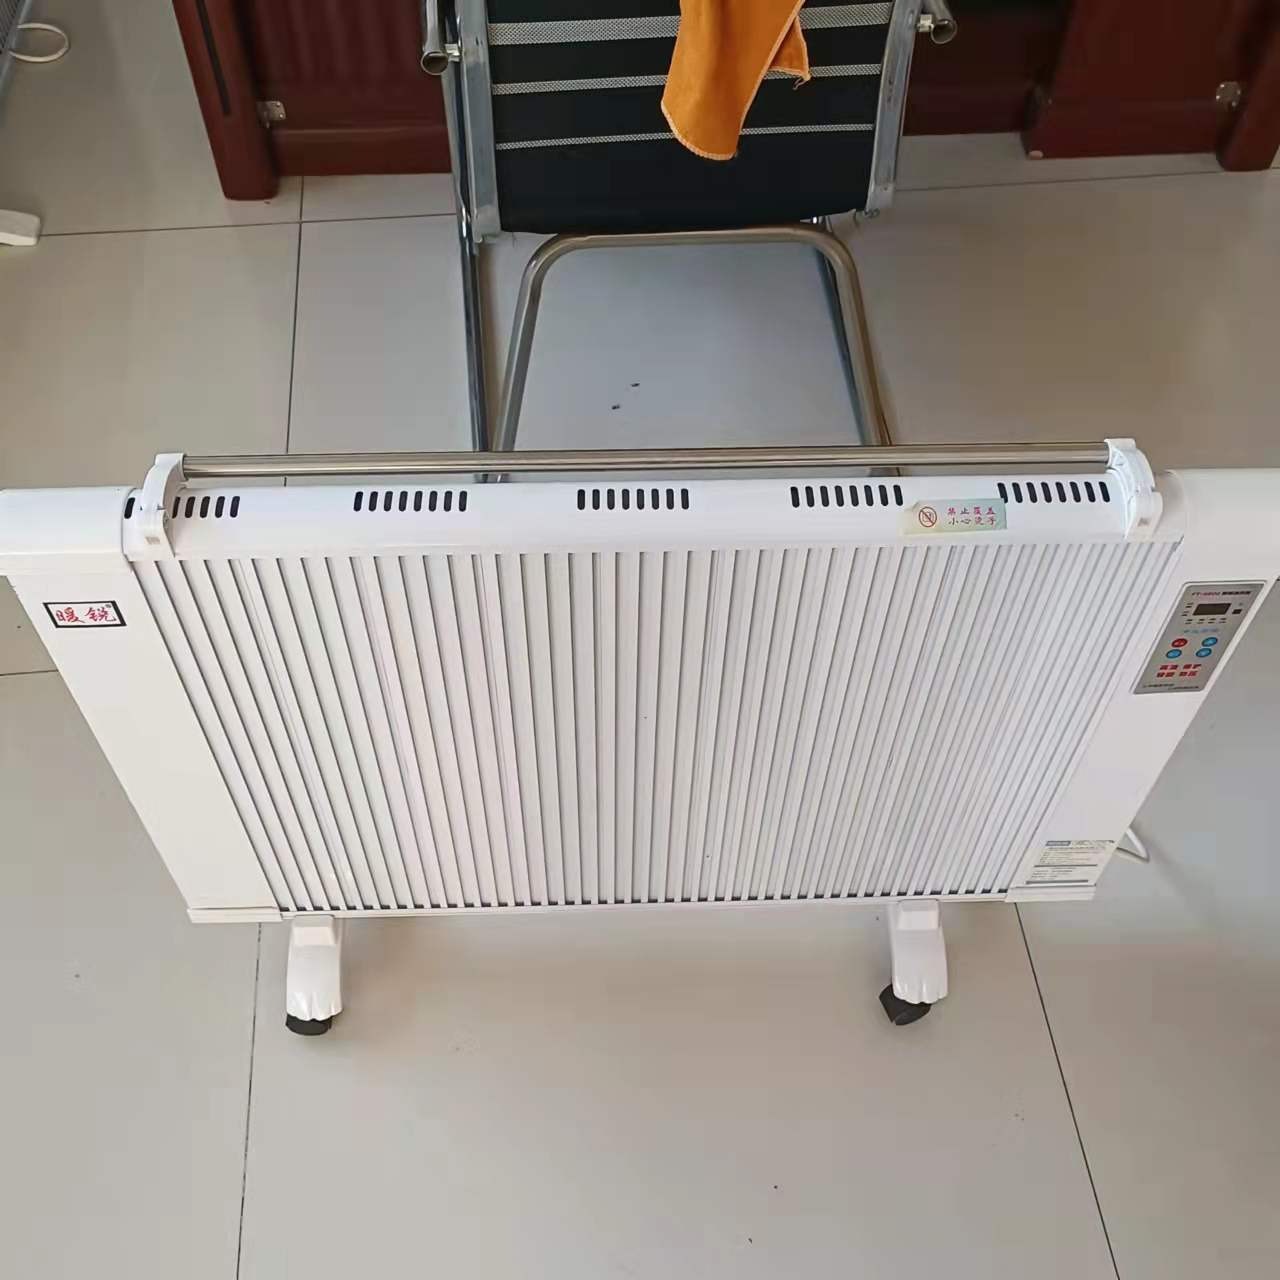 NS-2碳晶电暖器 暖硕 数显版电暖器 远红外加热移动取暖器图片